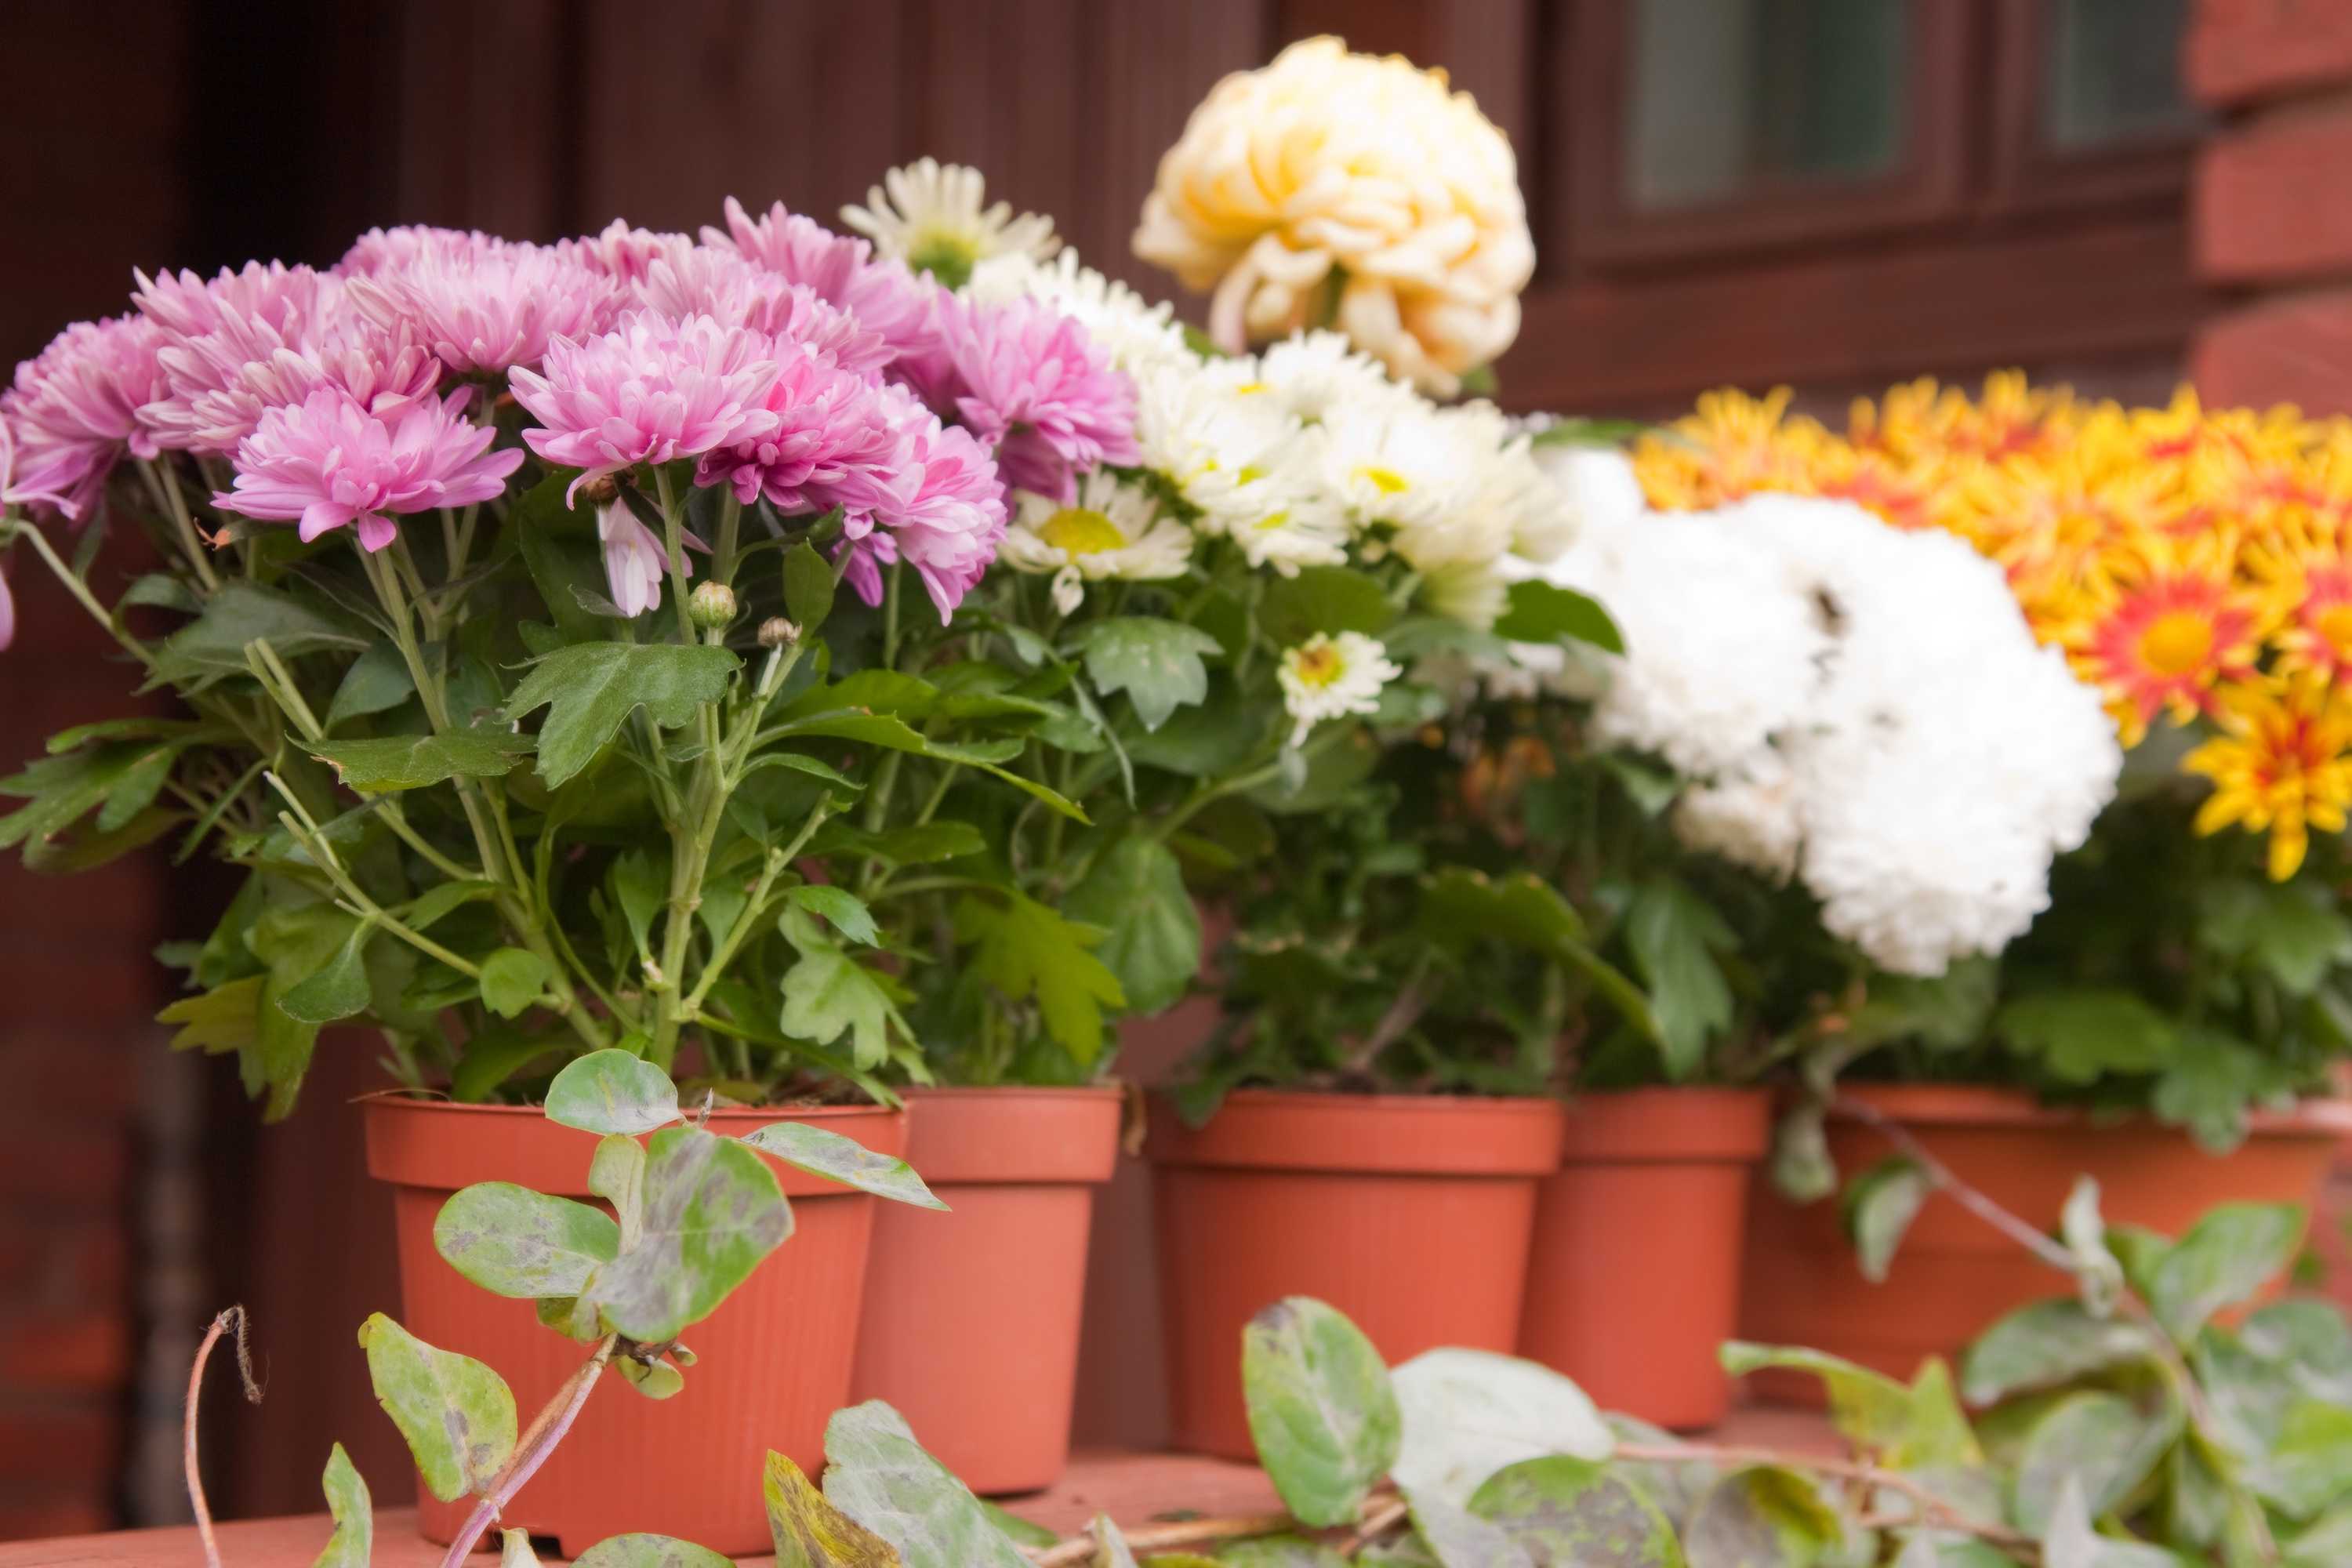 Вырастить хризантему из букета в домашних условиях с фото пошагово